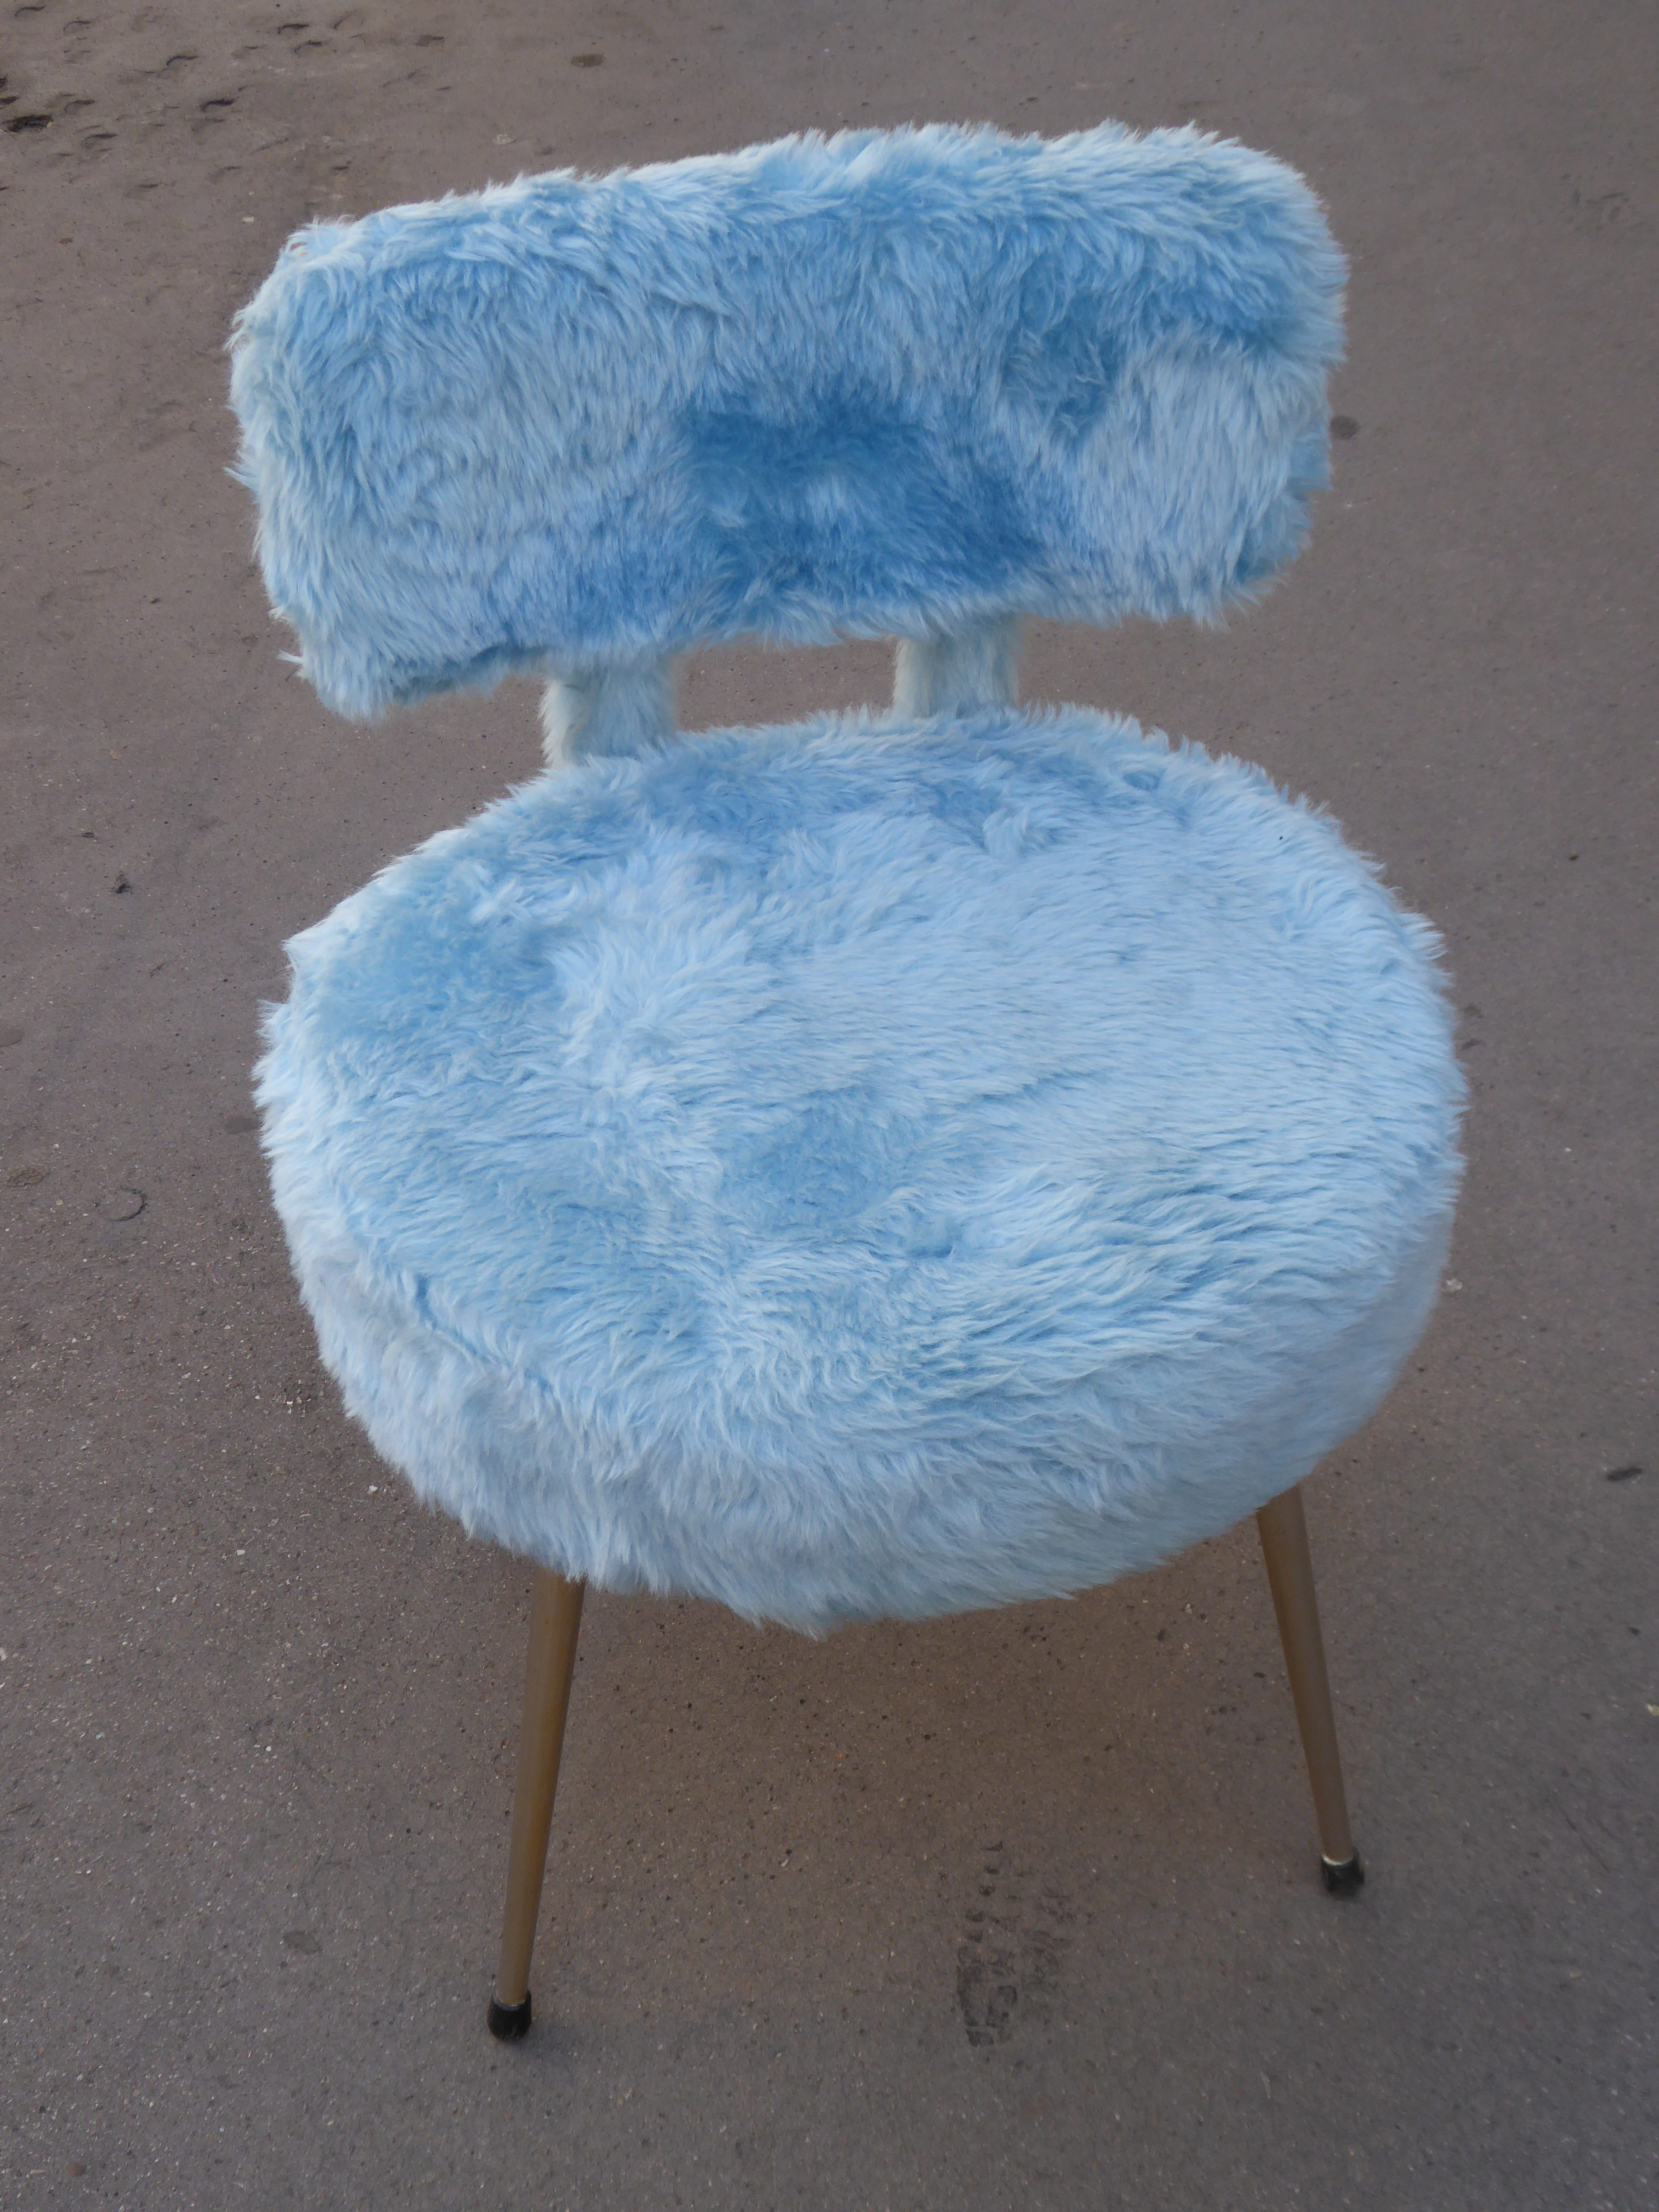 chaise « moumoute » Pelfran